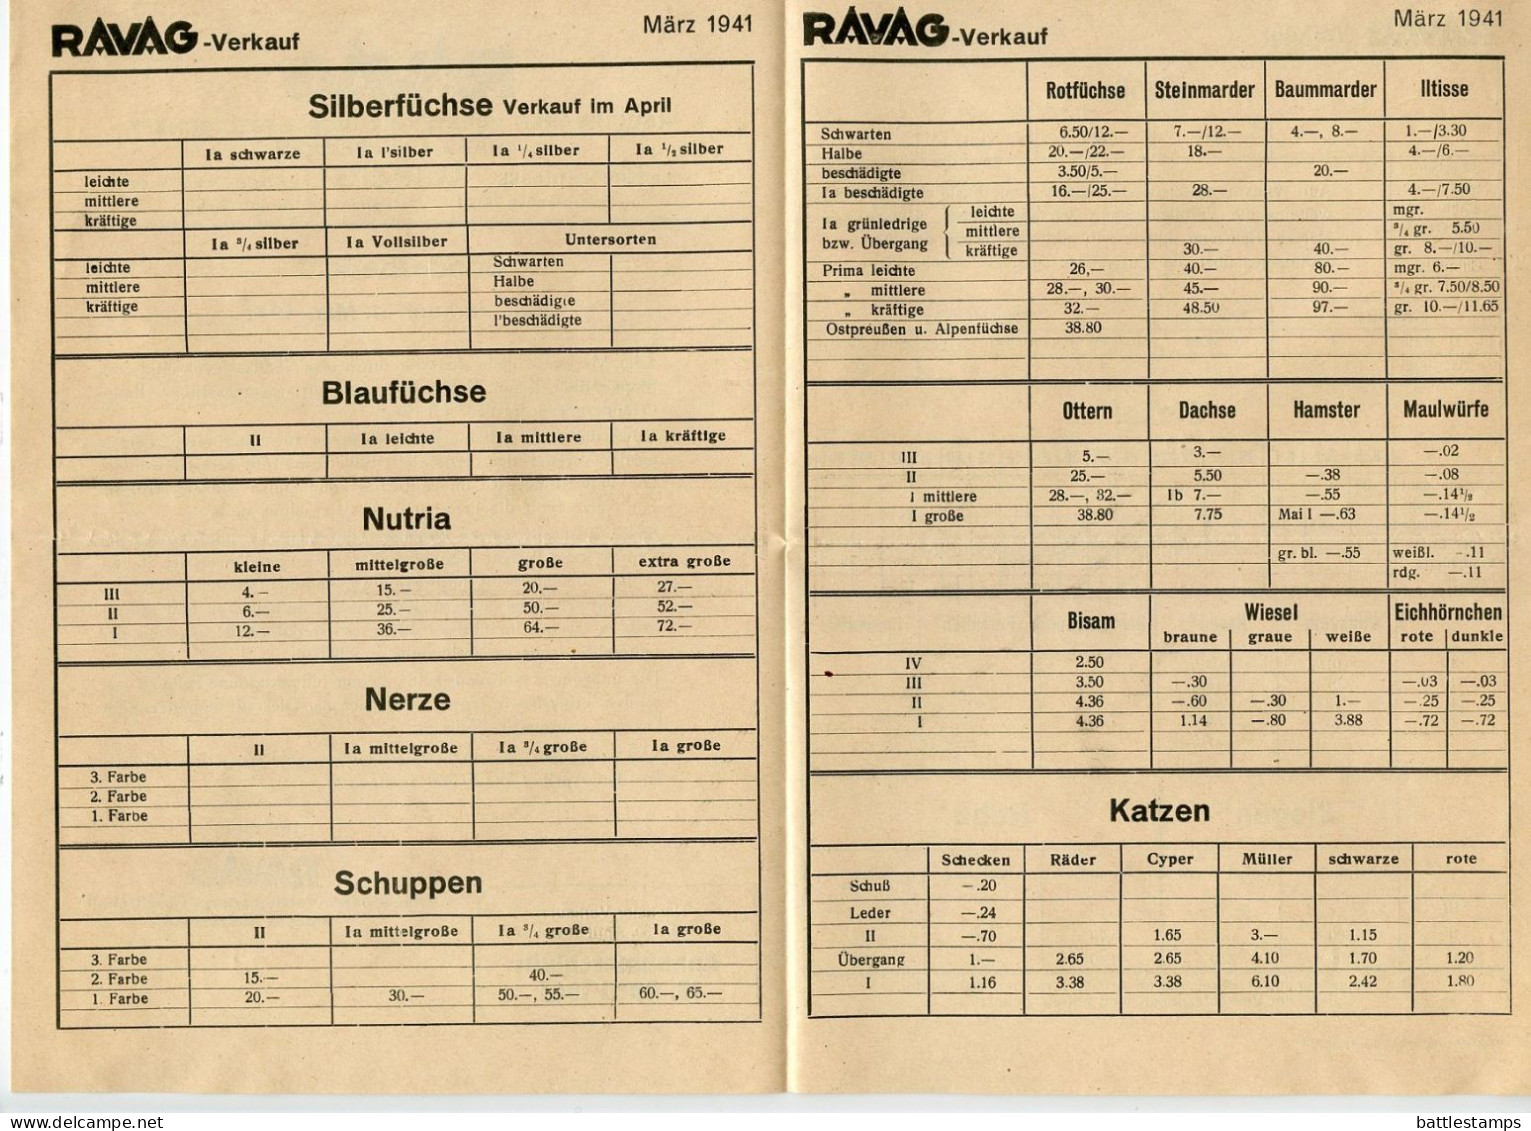 Germany 1941 3pf. Meter Cover & Report; Leipzig - RAVAG, Rauchwaren-Versteigerungs To Schiplage - Máquinas Franqueo (EMA)